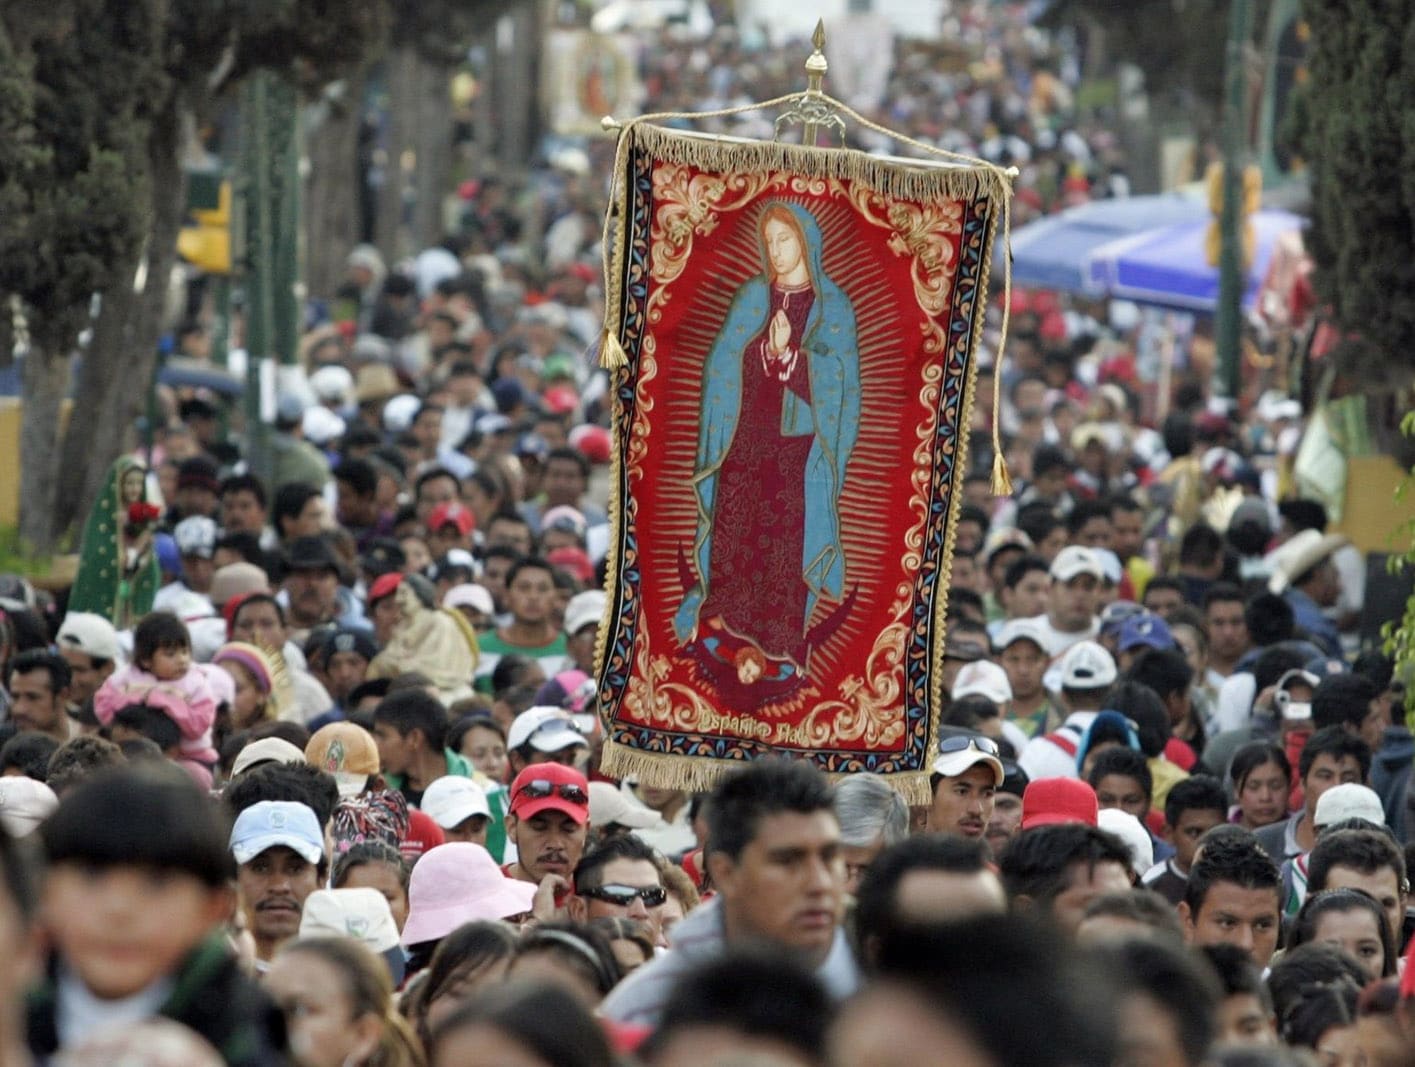 Hispanic Catholics